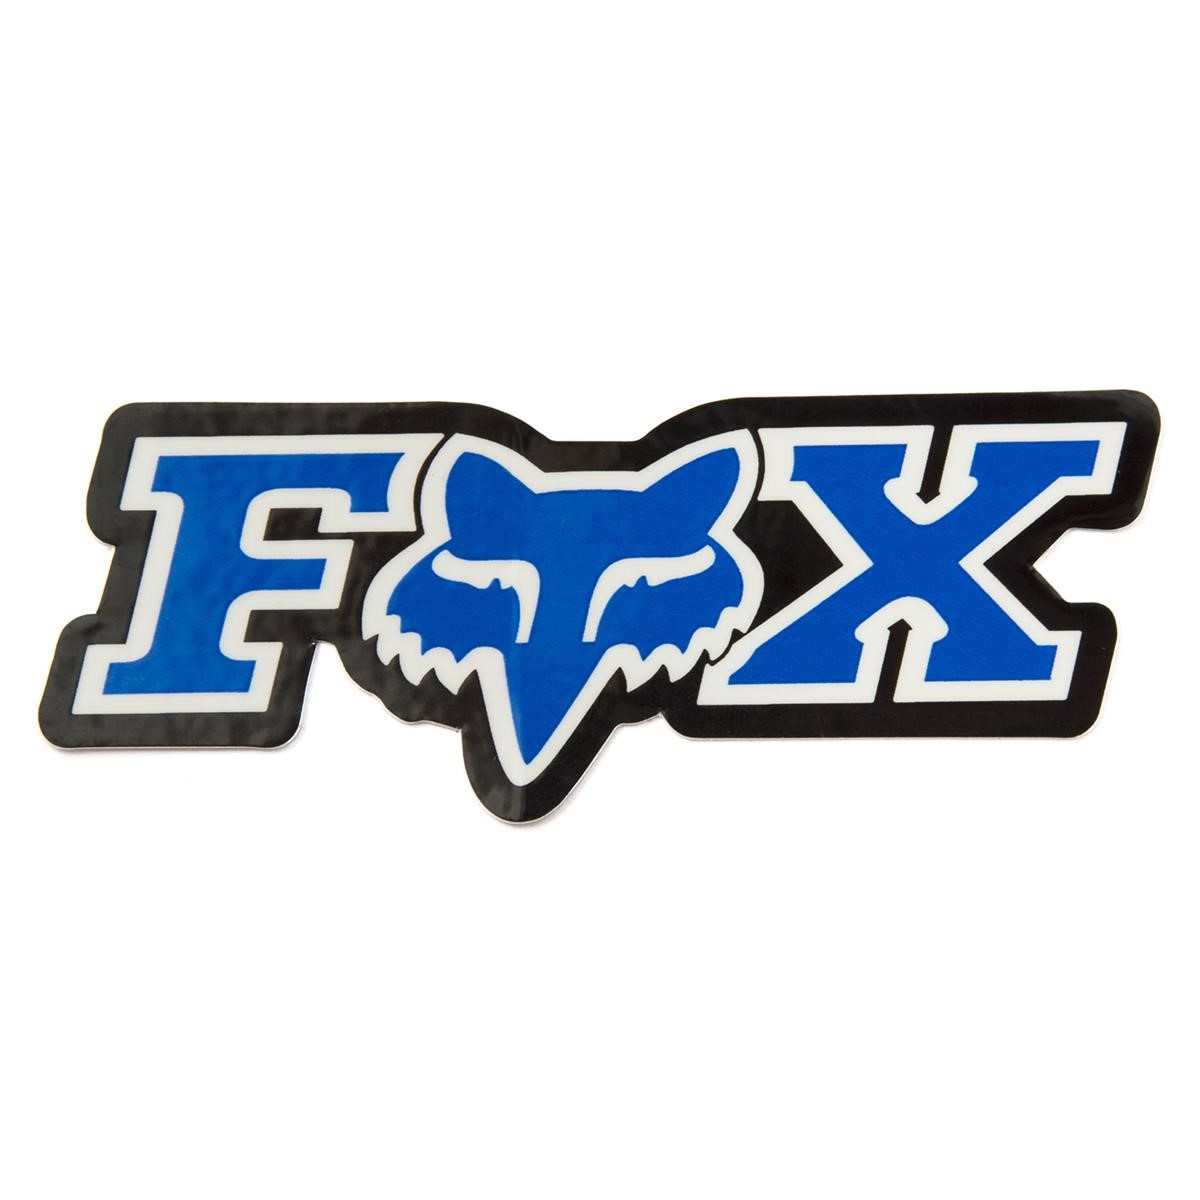 Fox Sticker Corporate Blau - 7.5 cm